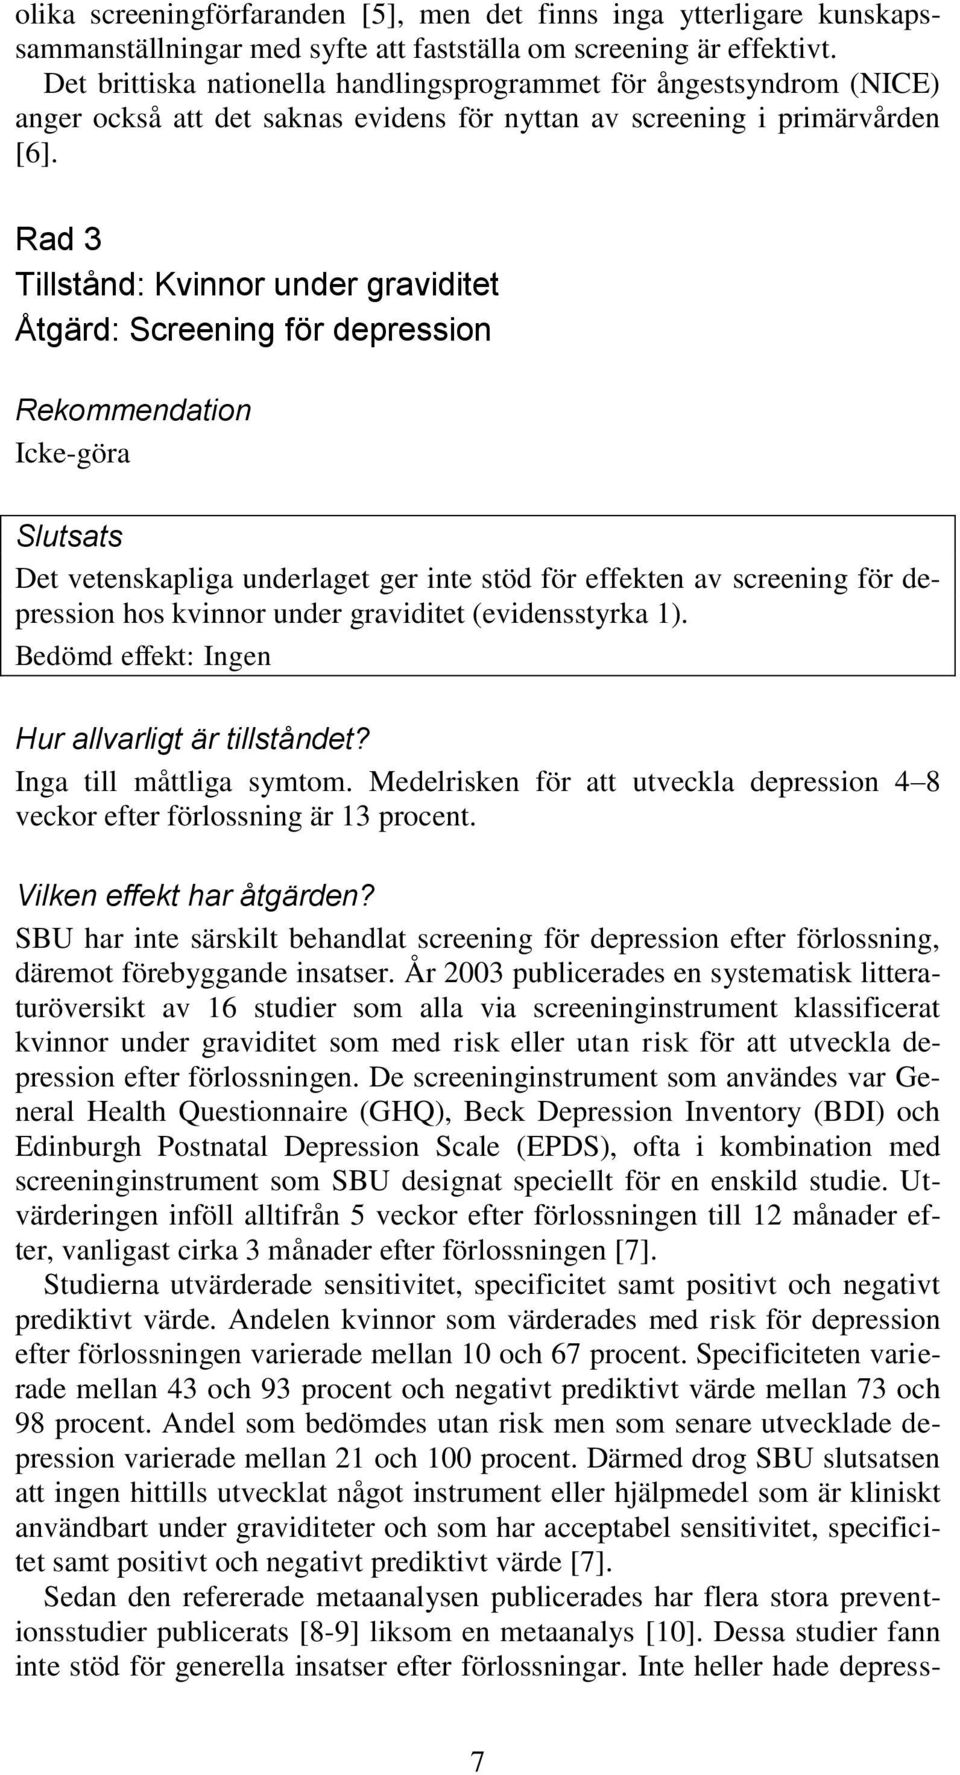 Rad 3 Tillstånd: Kvinnor under graviditet Åtgärd: Screening för depression Icke-göra Slutsats Det vetenskapliga underlaget ger inte stöd för effekten av screening för depression hos kvinnor under